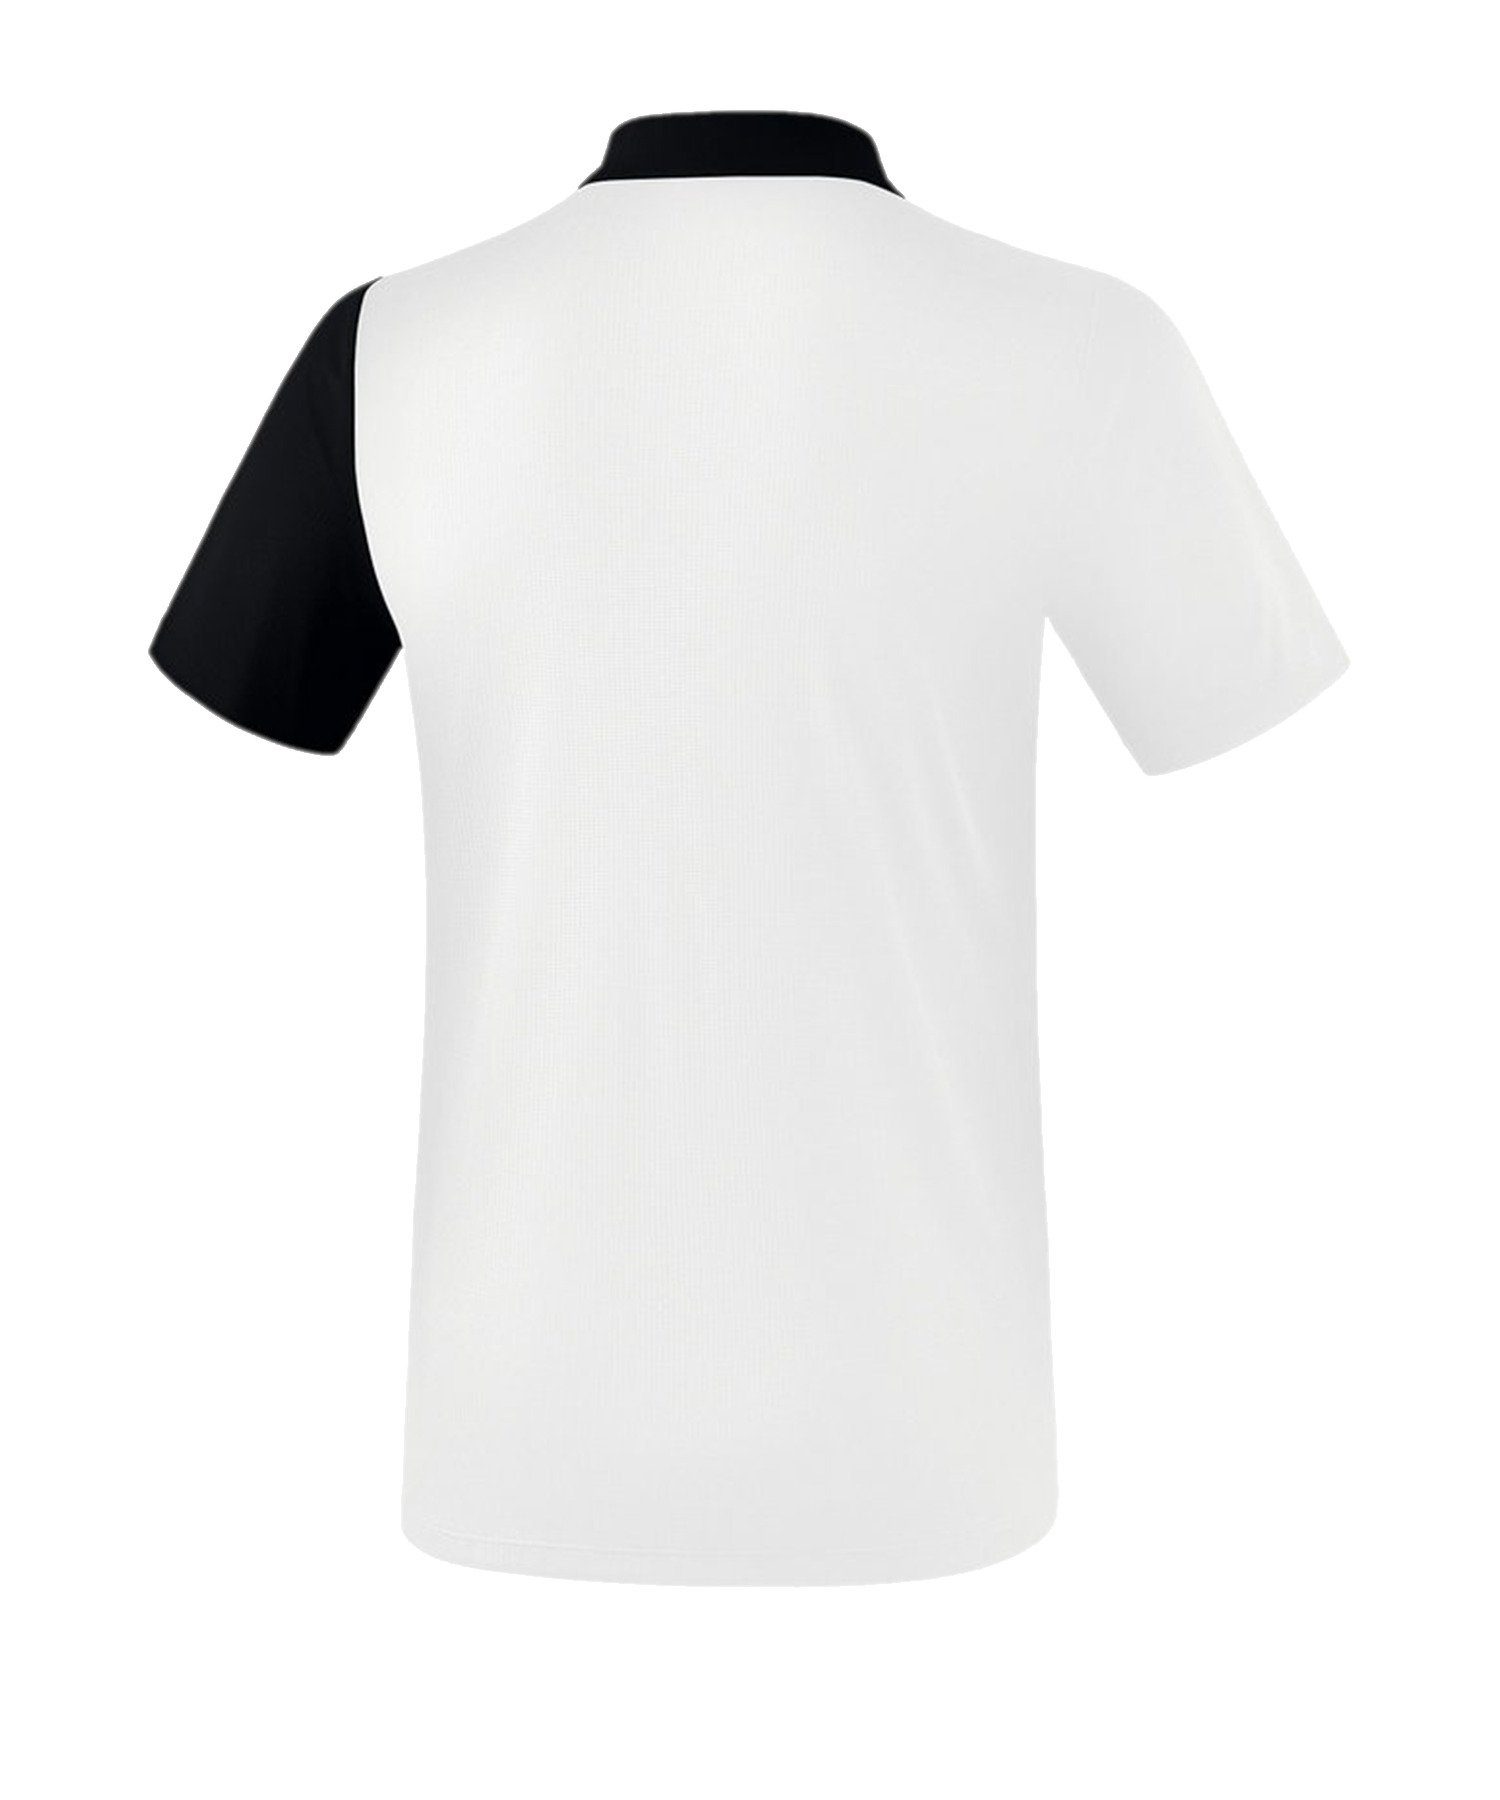 WeissSchwarzGrau T-Shirt Poloshirt 5-C default Erima